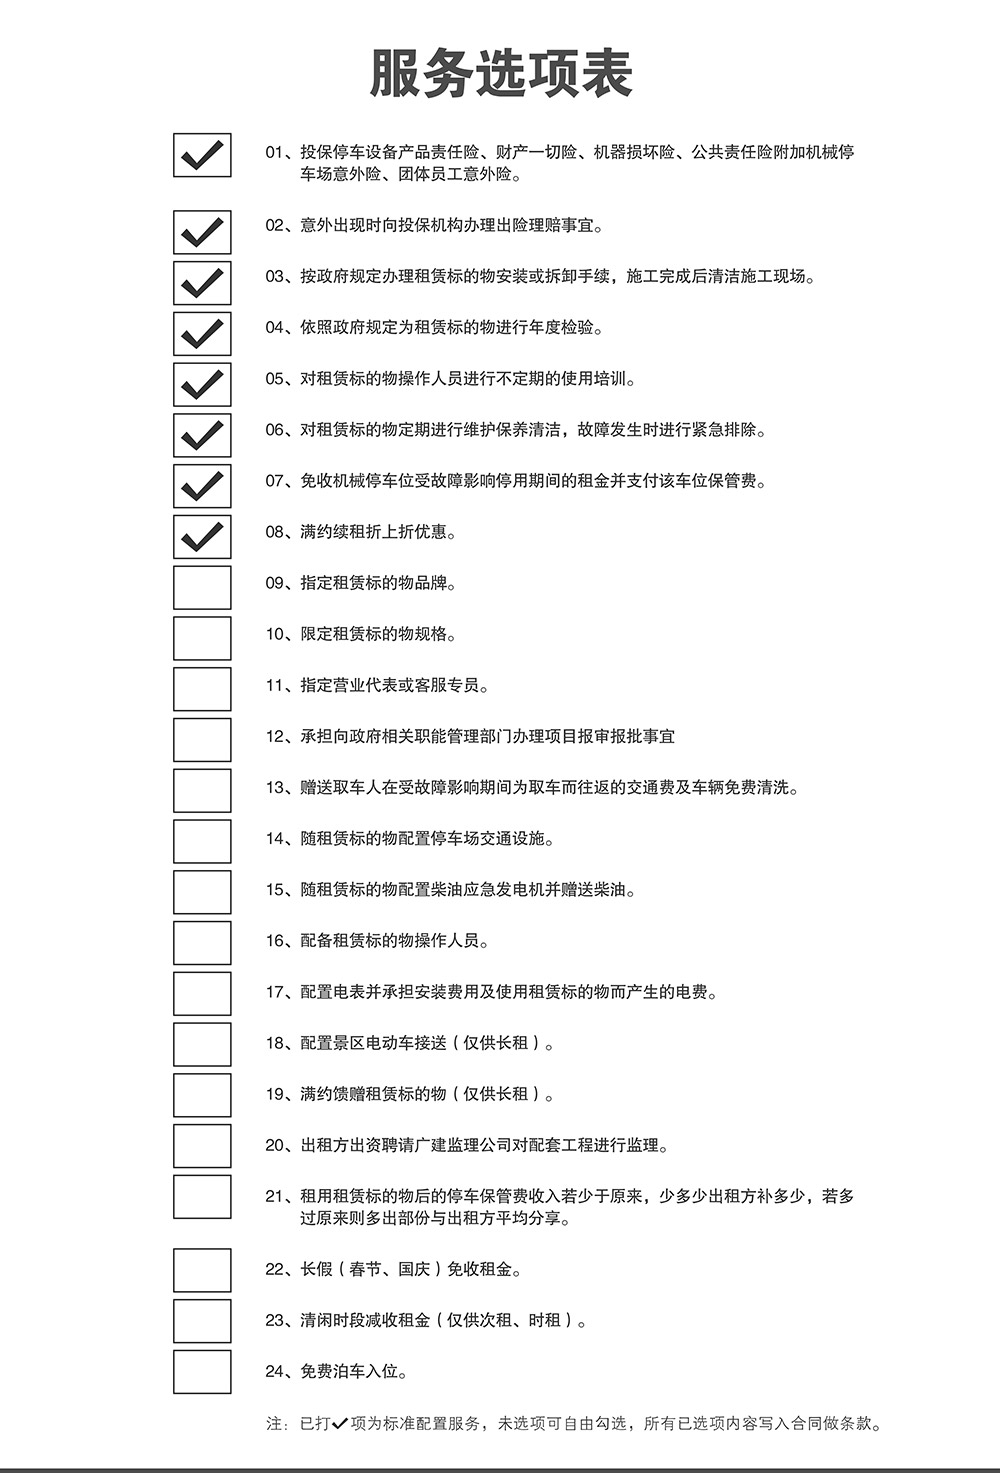 重庆停车设备租赁服务选项表.jpg